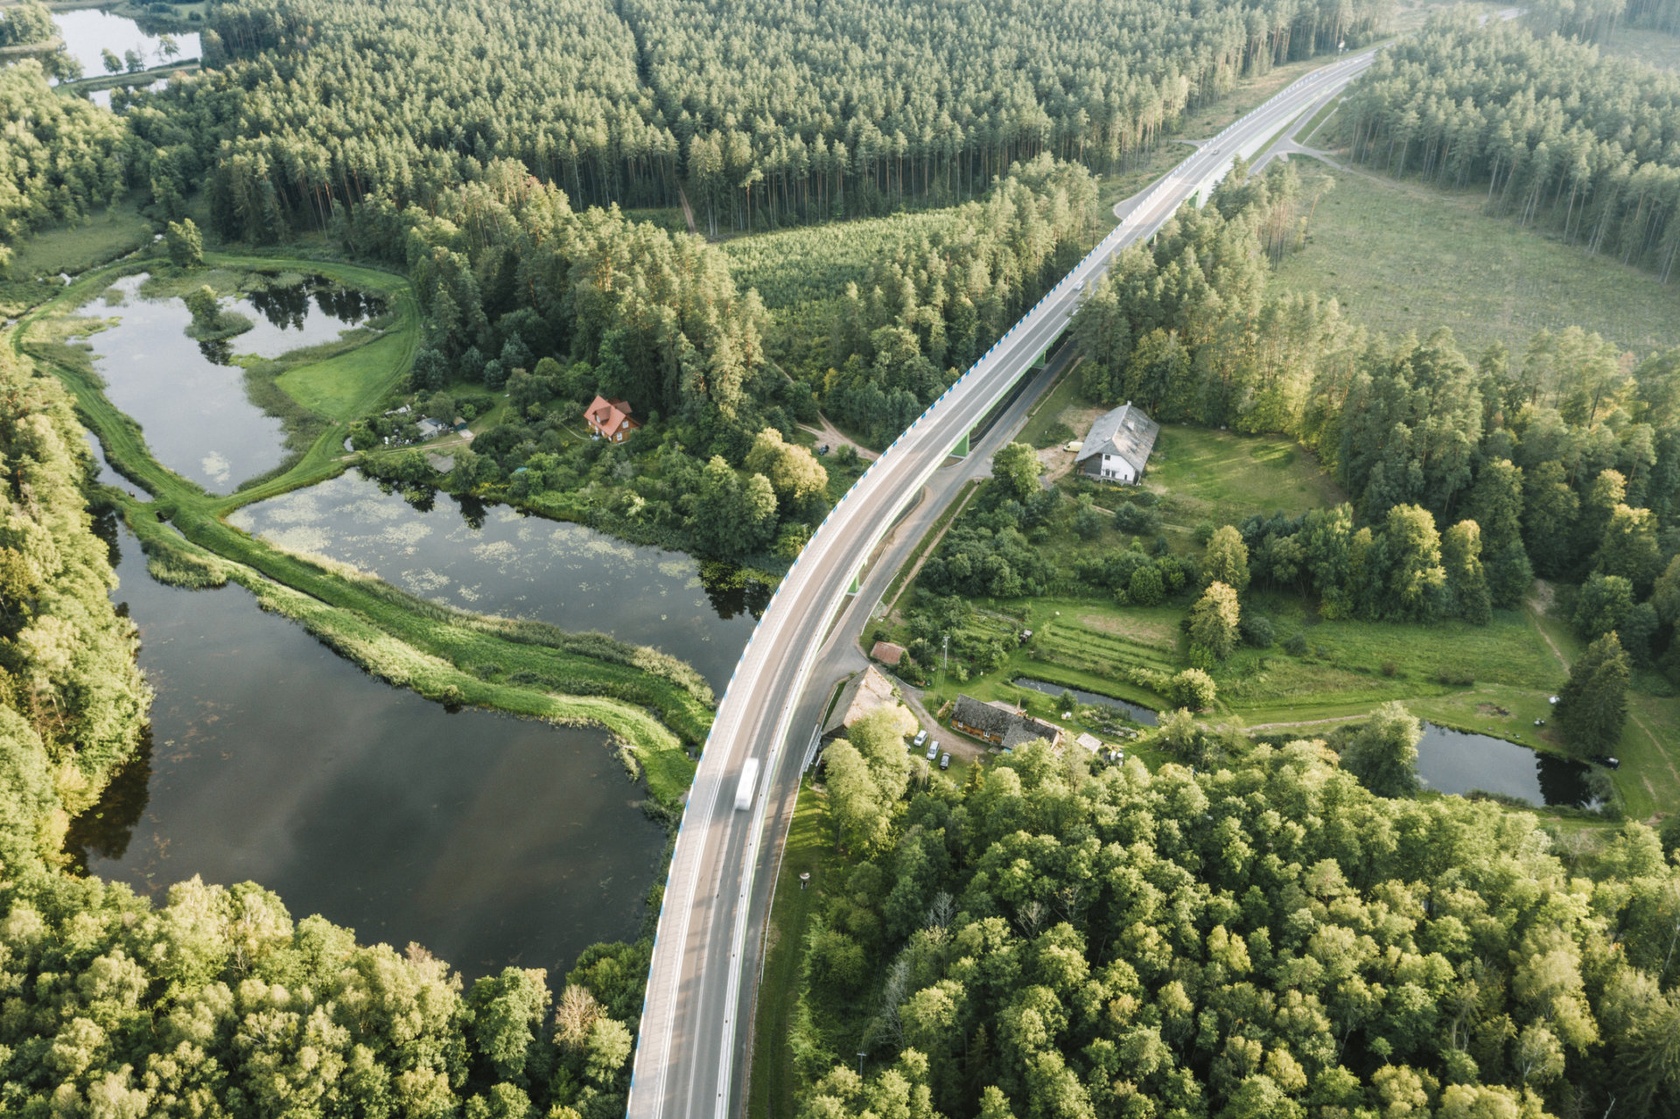 Autostrady w Polsce